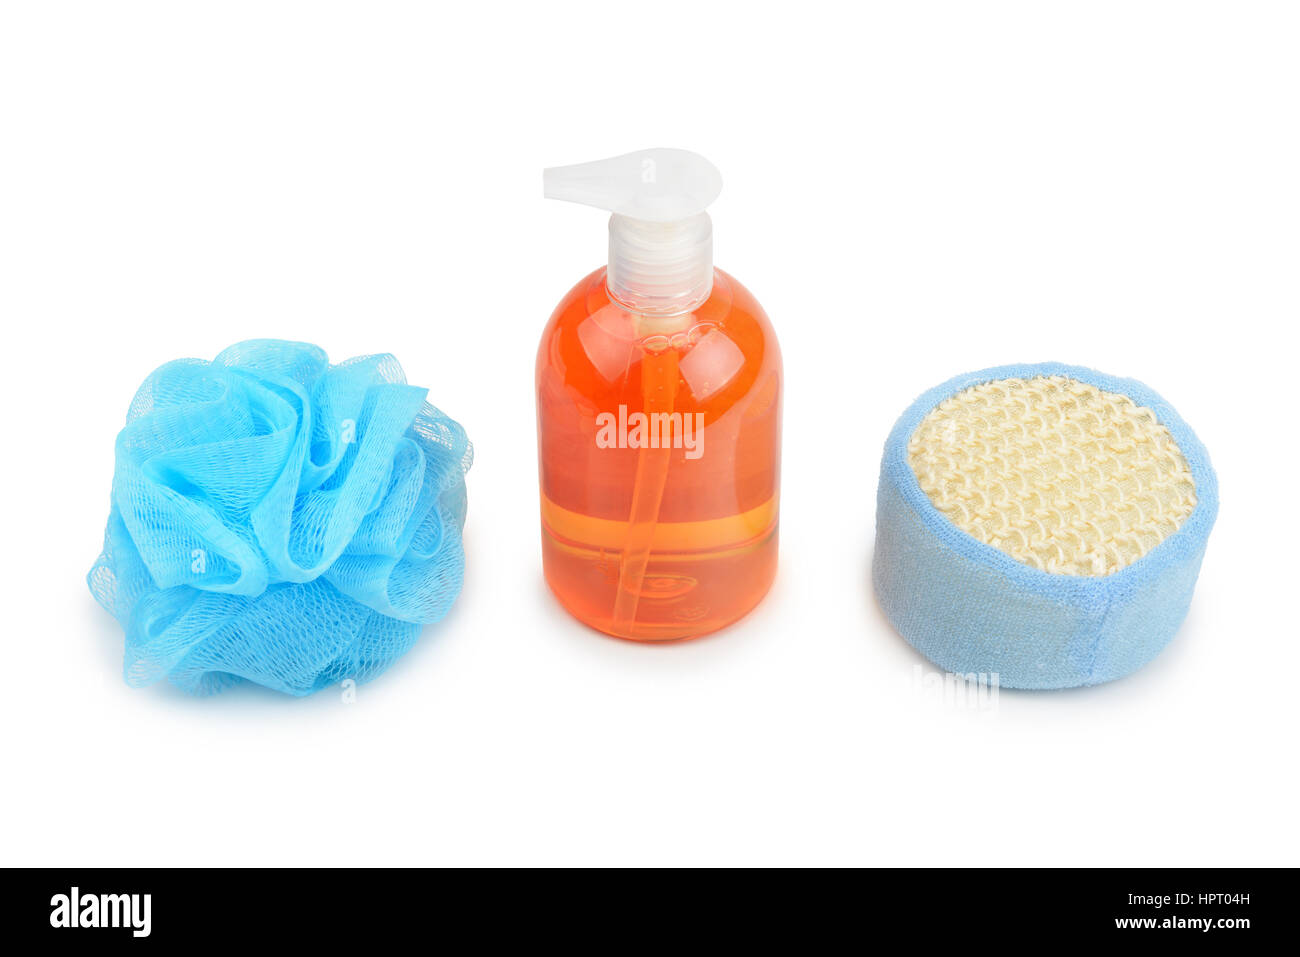 shampoo and sponge isolated on white background Stock Photo